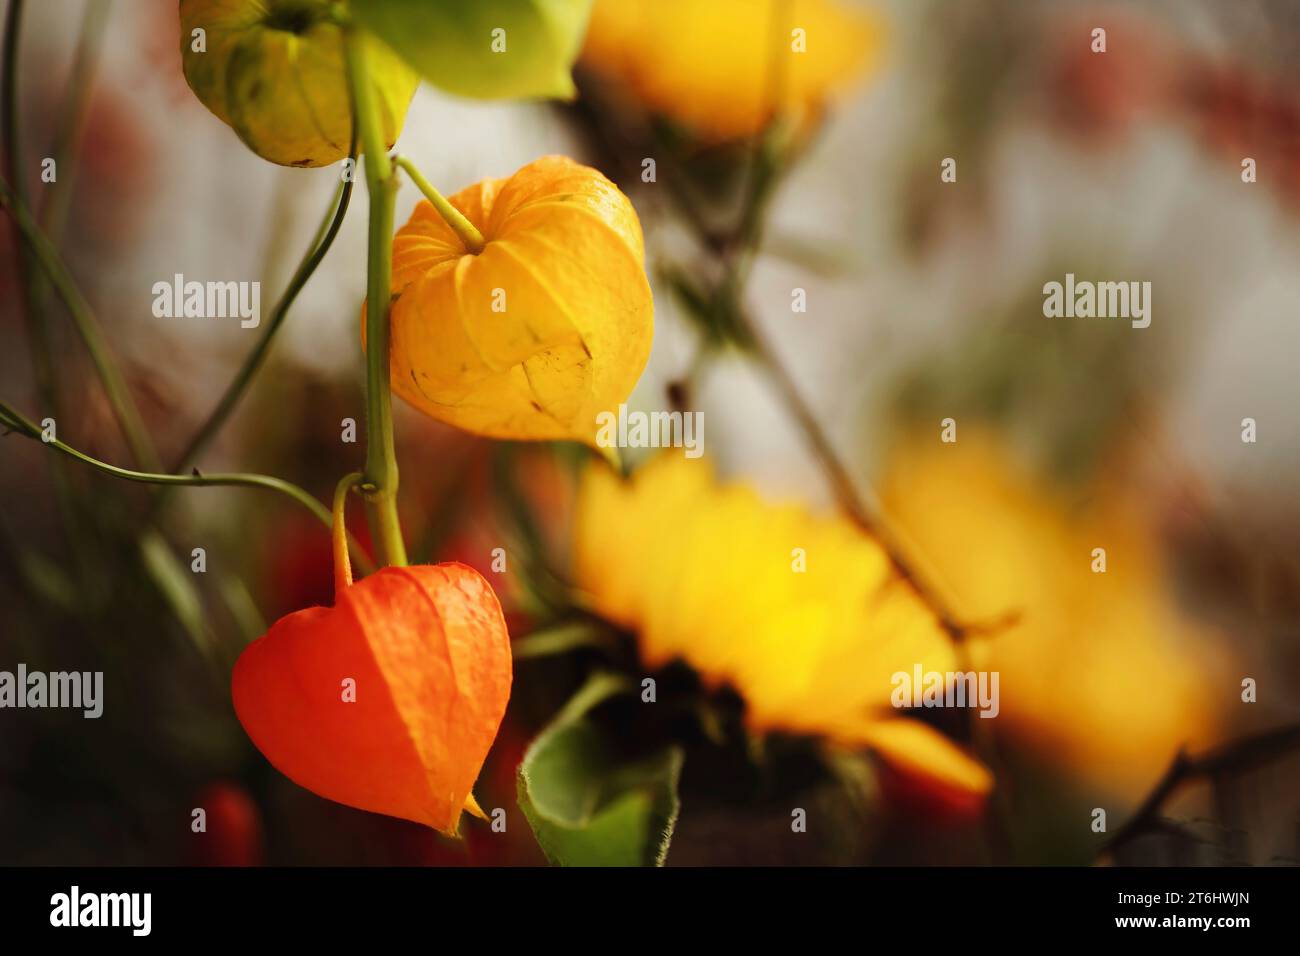 bladder cherry, Physalis alkekengi, orange and yellow. Stock Photo